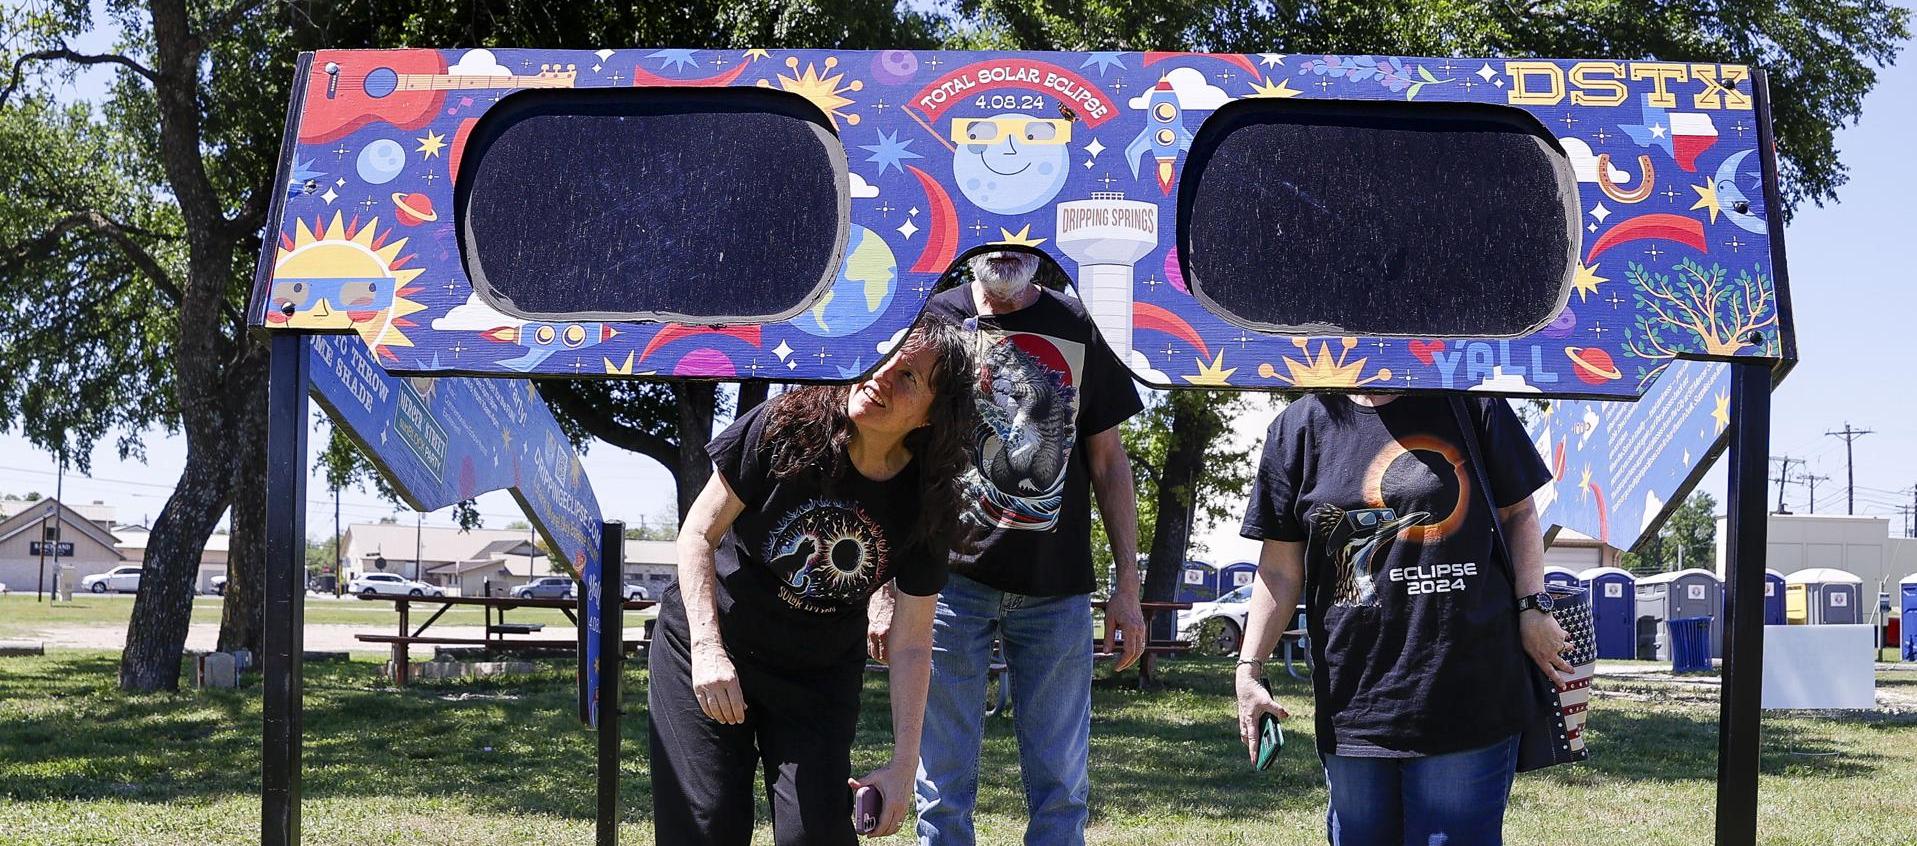 Una familia mira a través de un par de gafas gigantes especiales para el eclipse solar en el Veterans Memorial Park en Dripping Springs, Texas